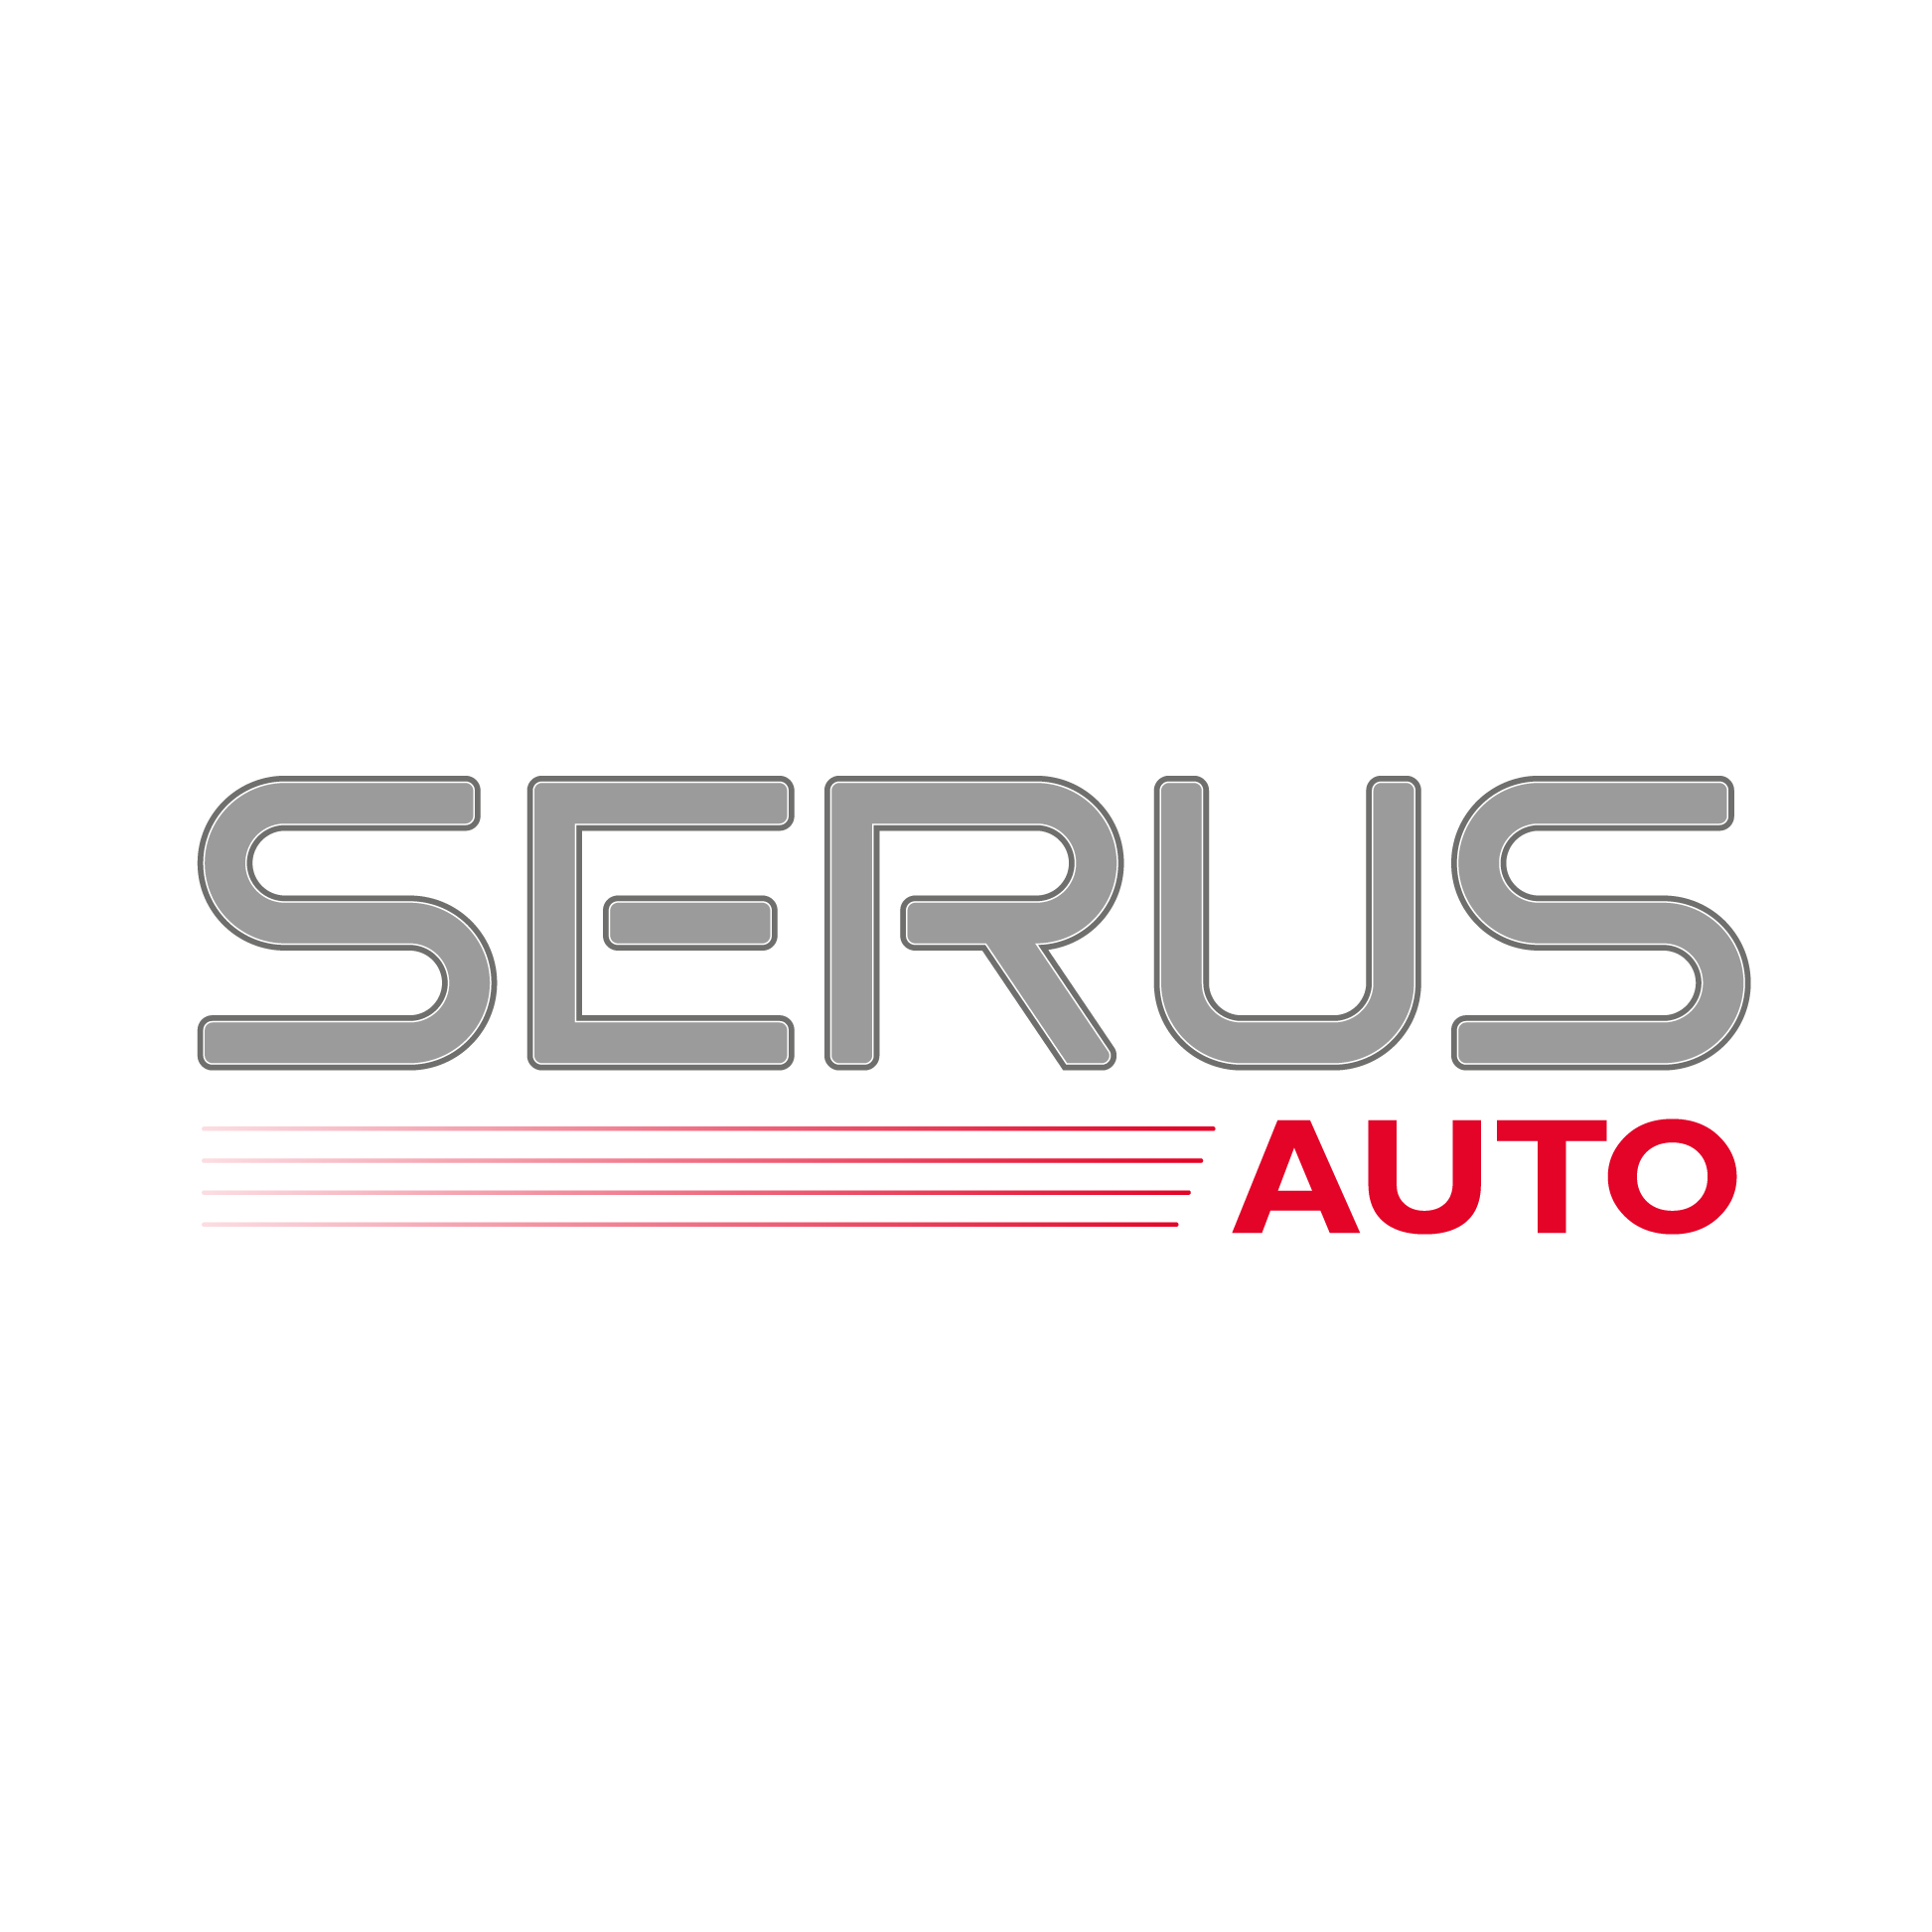 Service Auto Serus